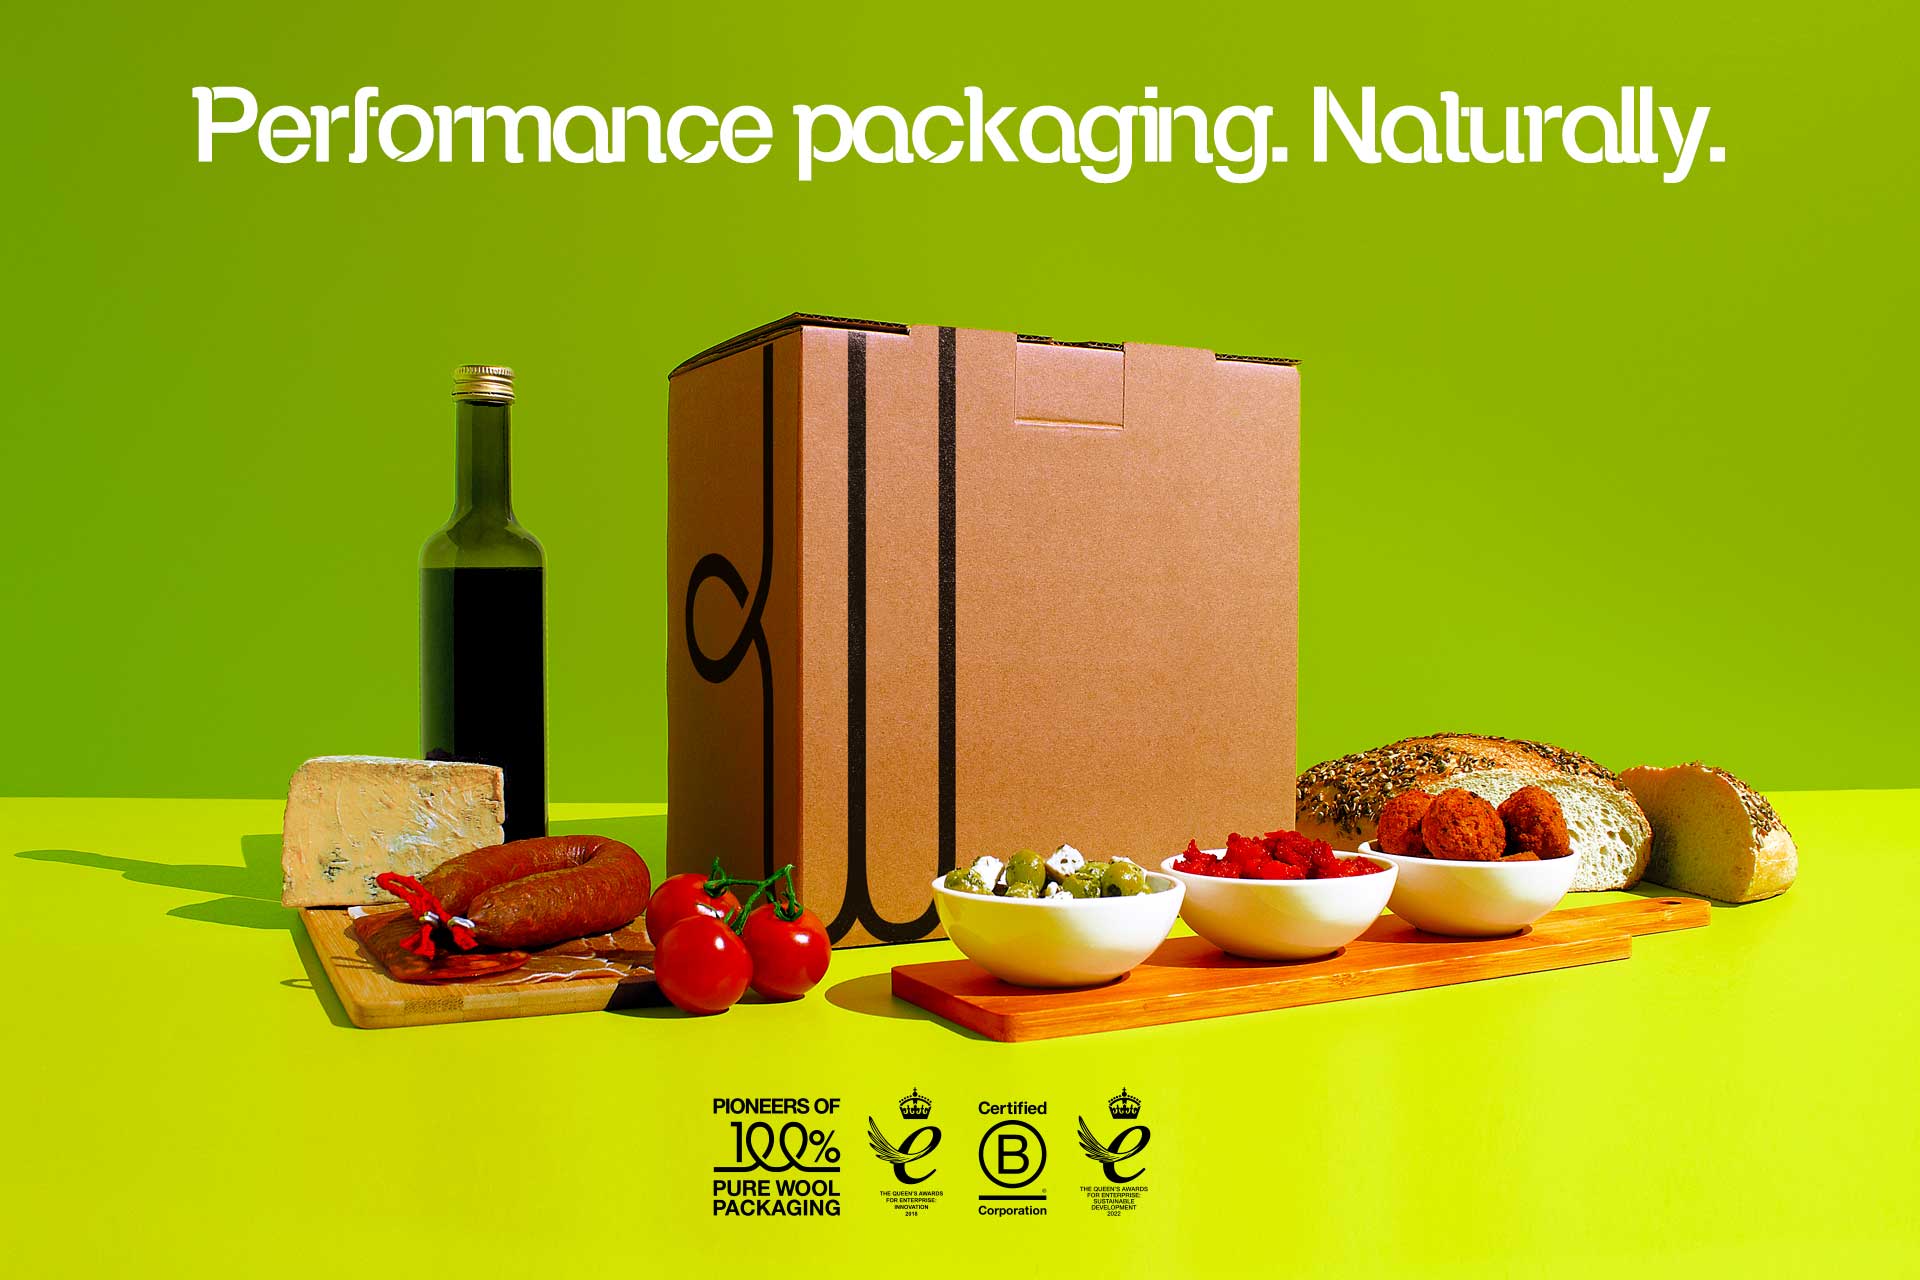 Woolcool® Food packaging